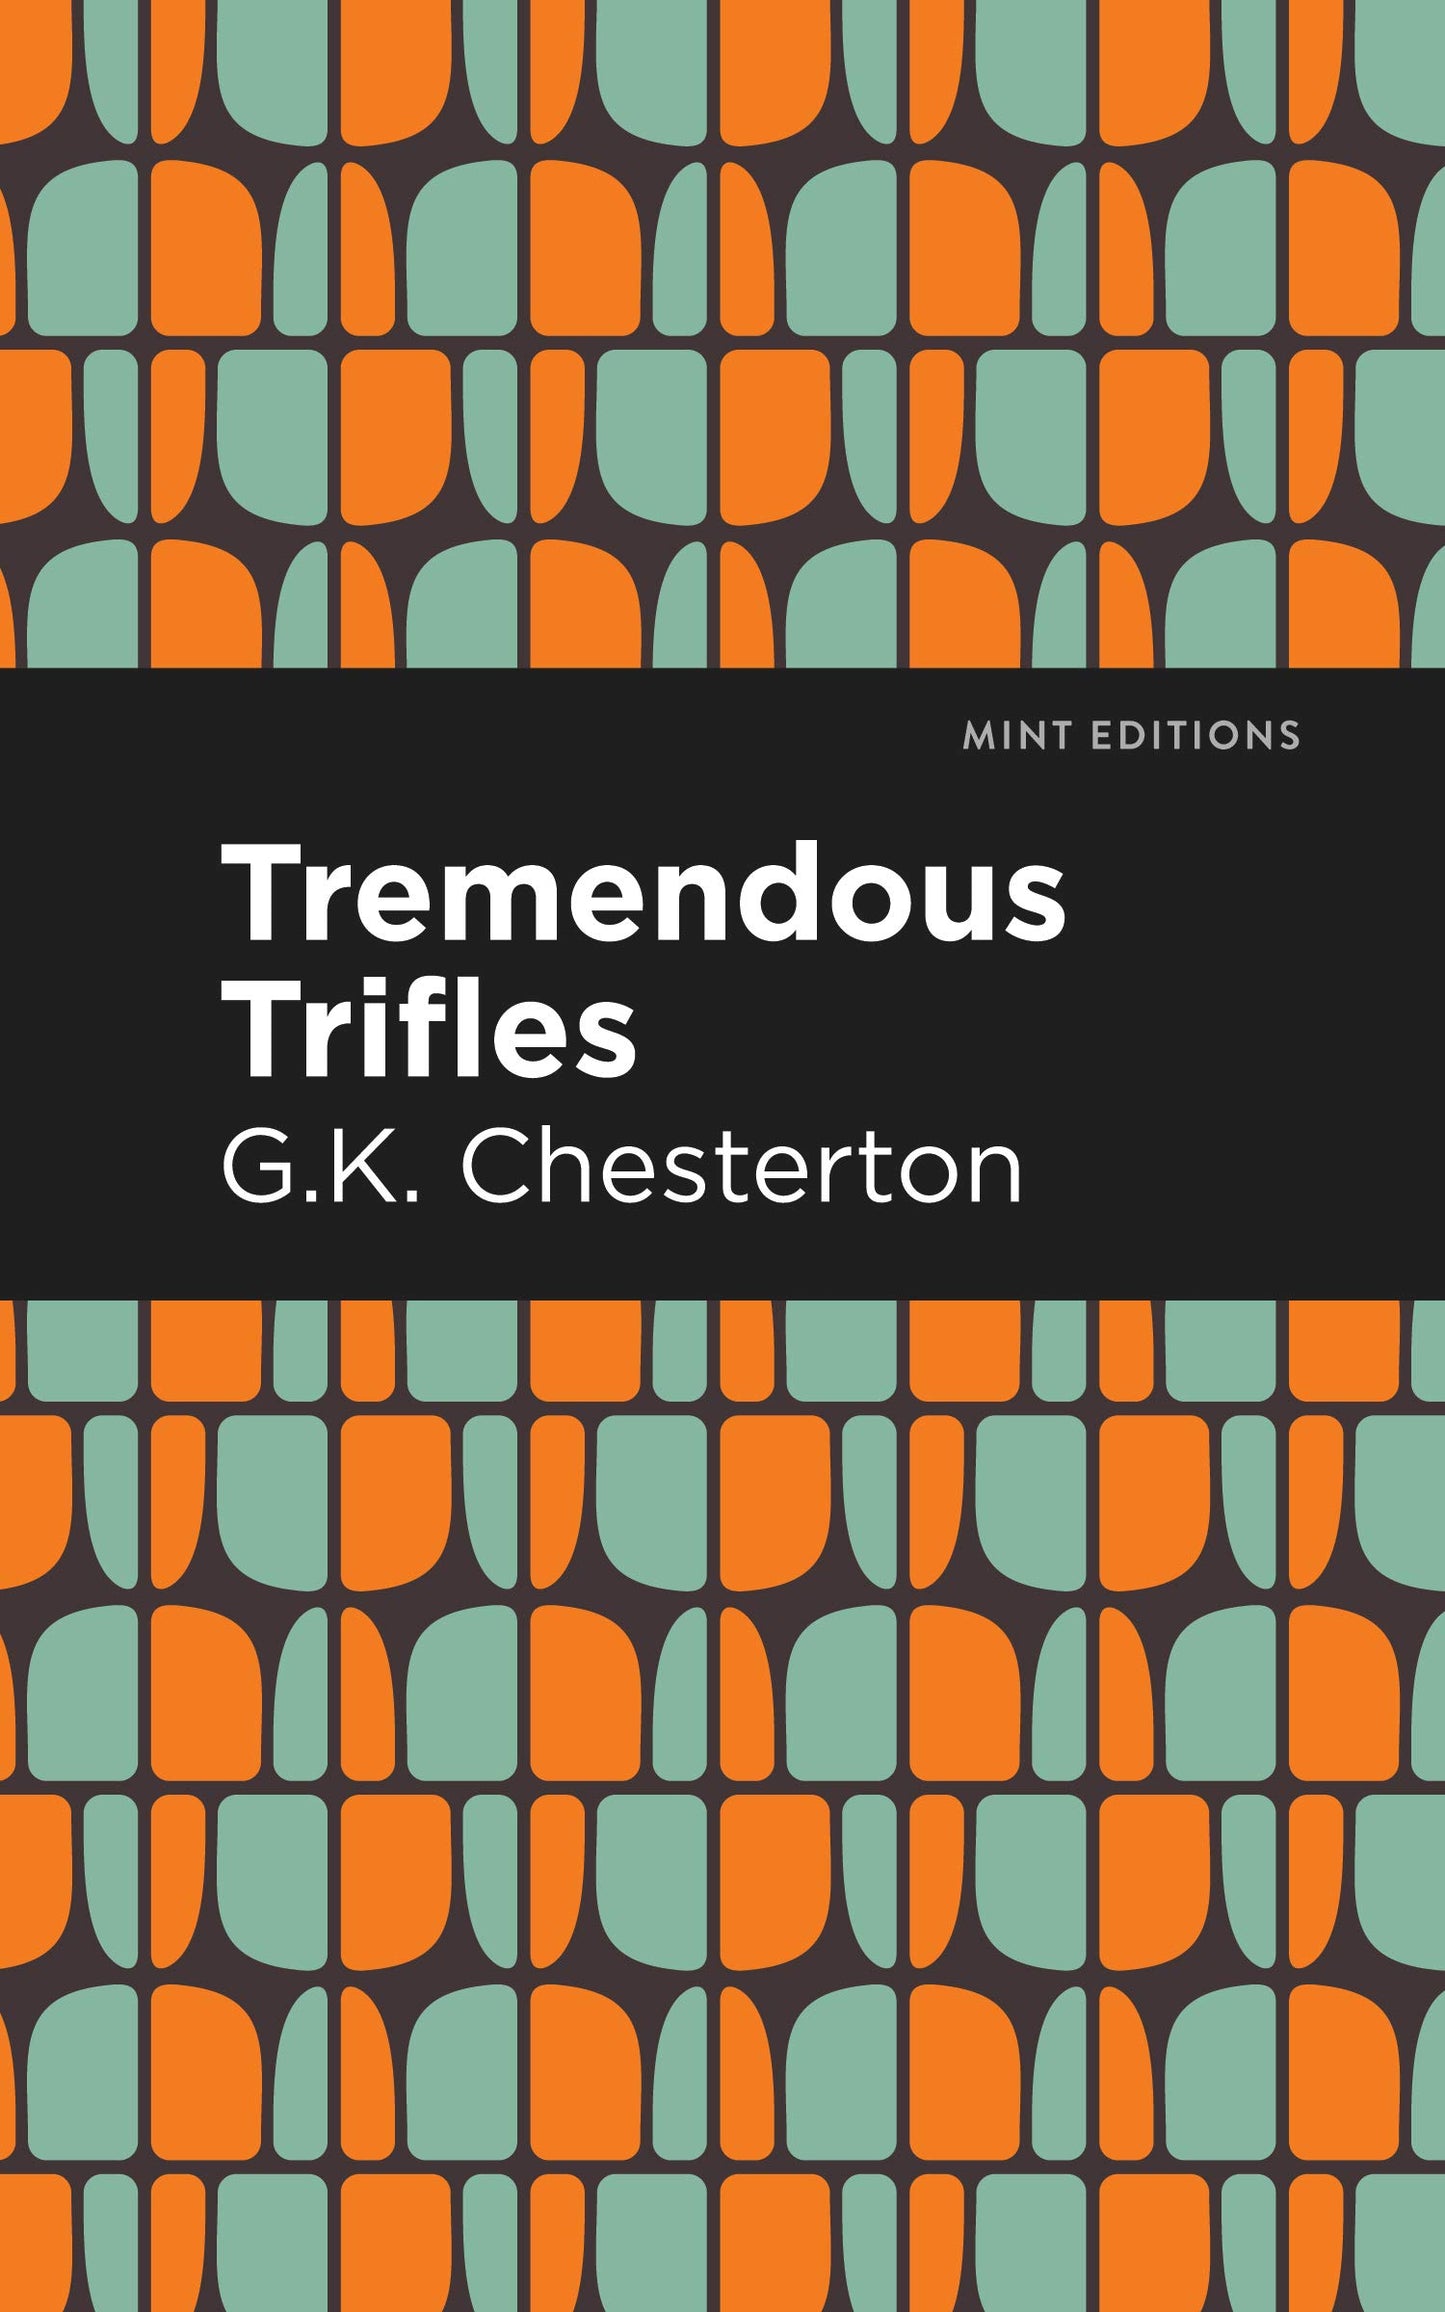 Tremendous Trifles (Chesterton - Mint ed. pb)